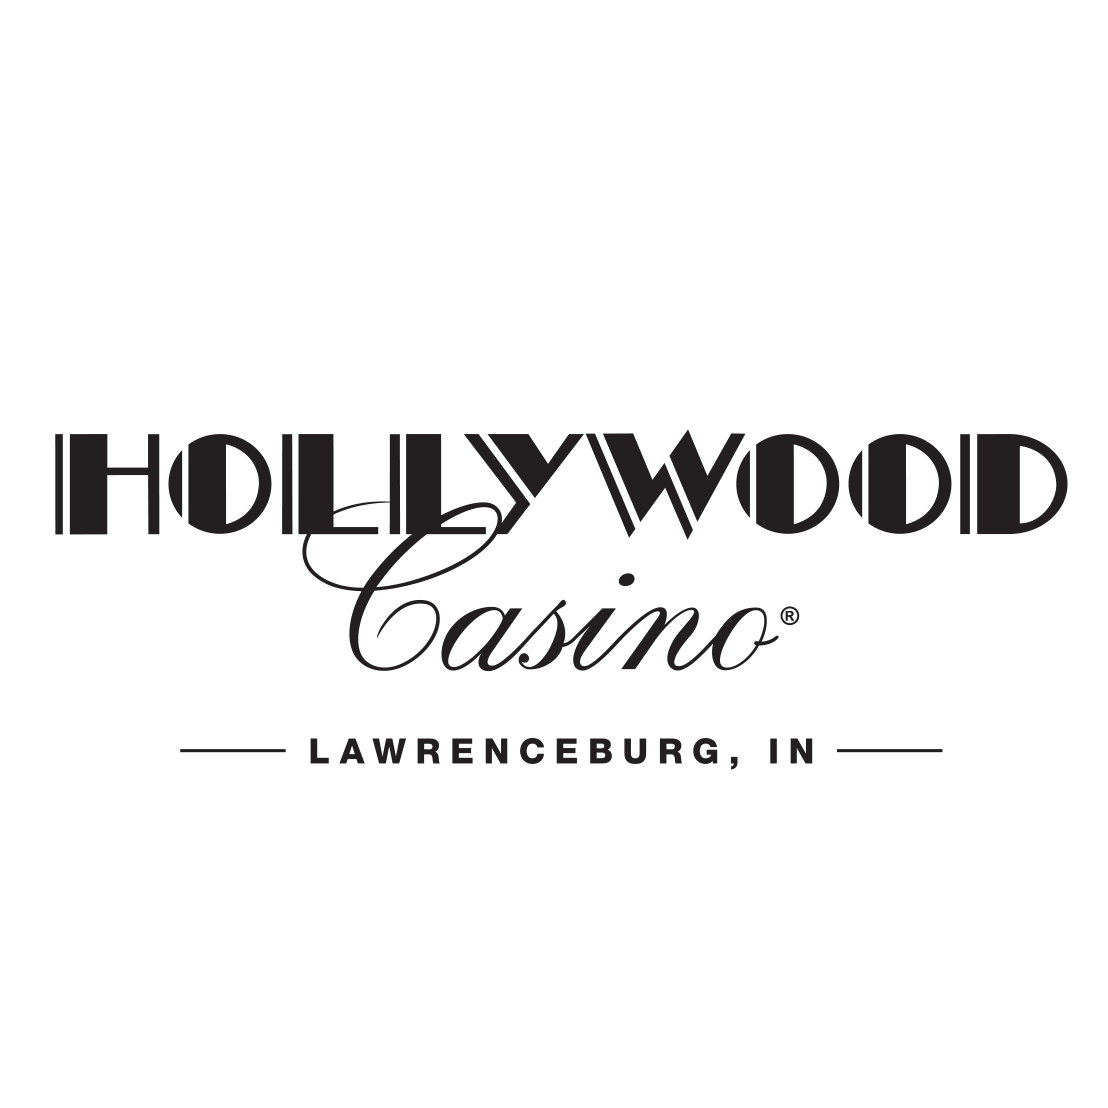 hollywood casino lawrenceburg indiana emt